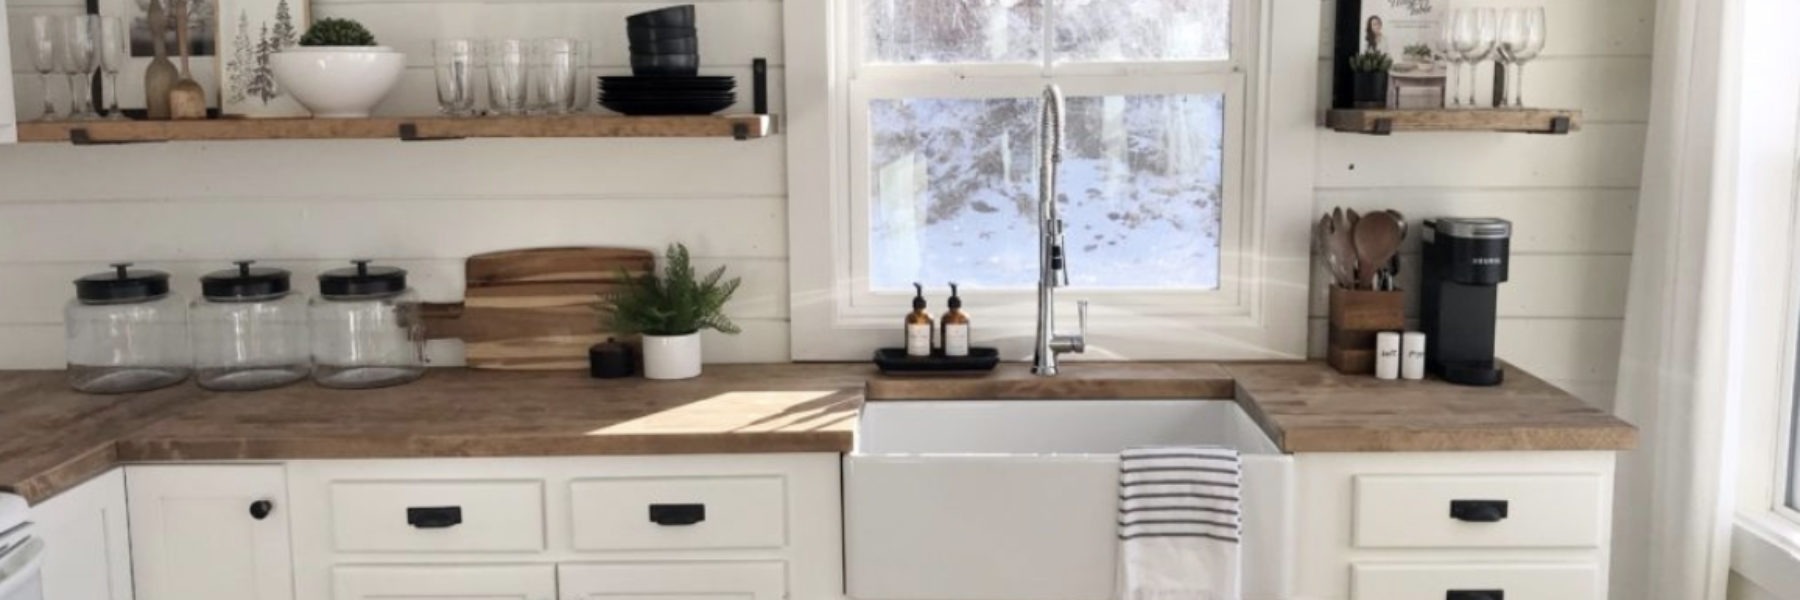 cabin kitchen sink idea